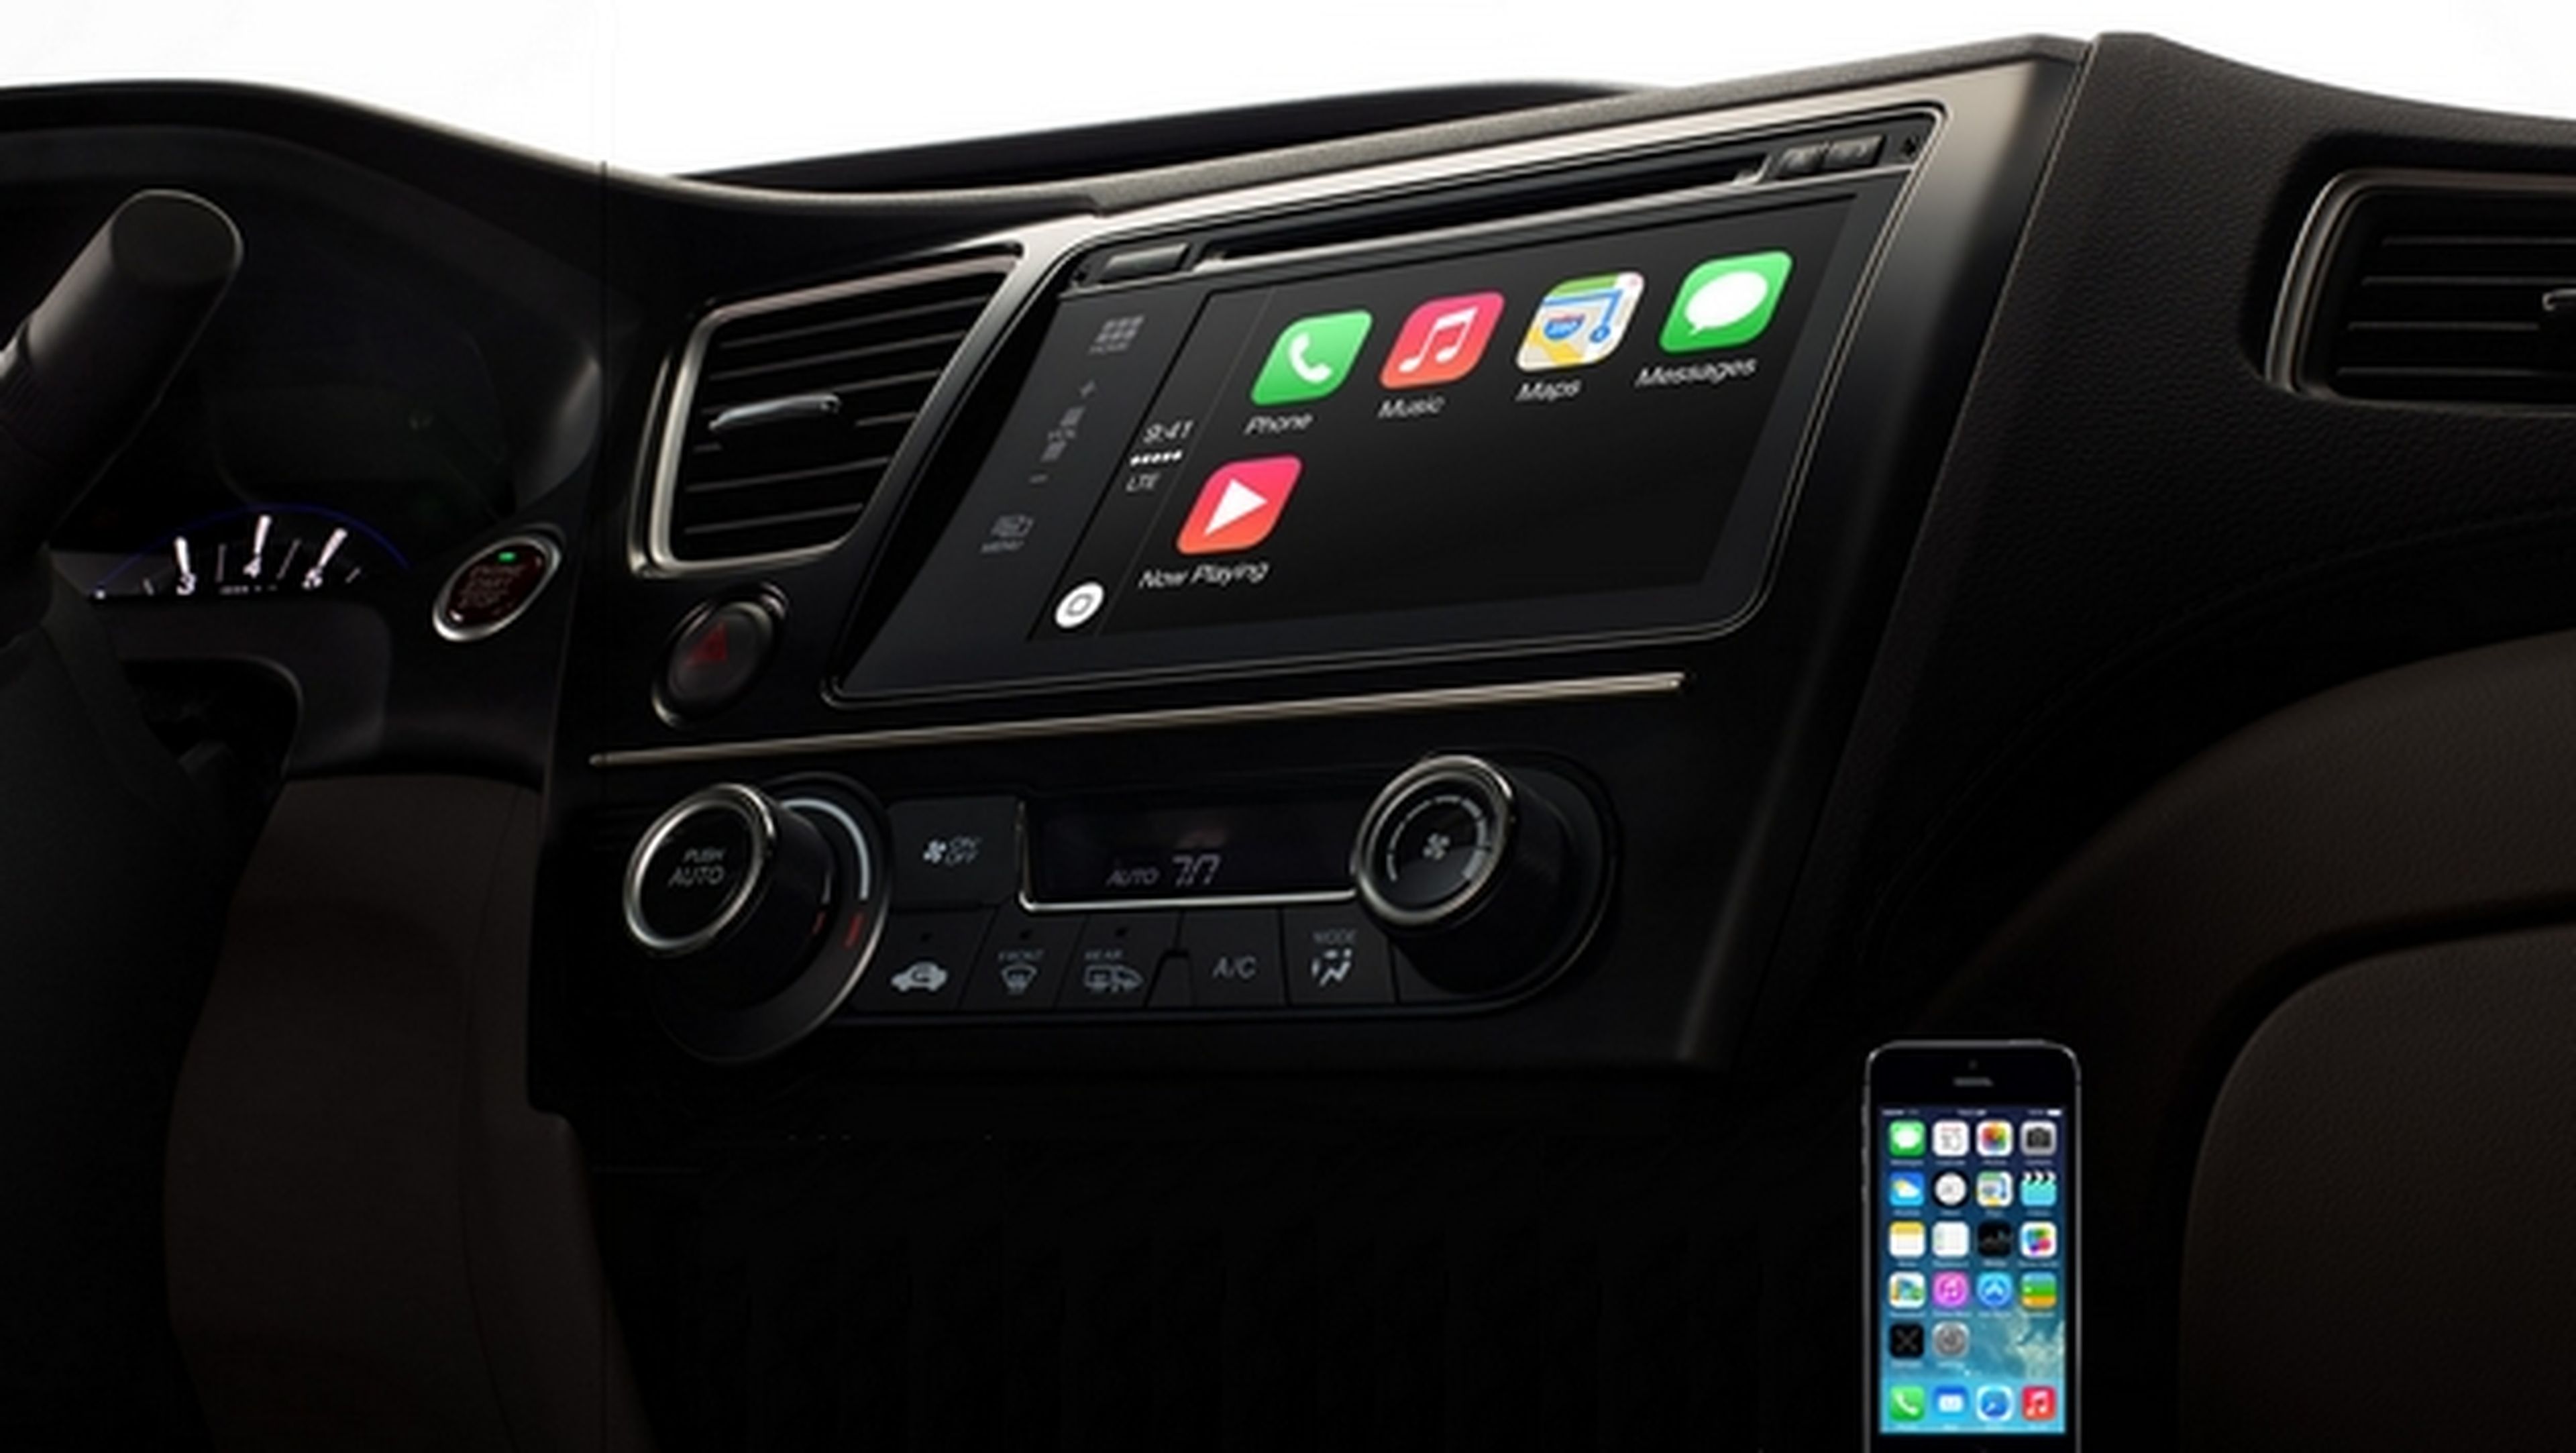 Apple CarPlay, así es iOS in the Car. Conecta el iPhone al coche para reproducir música, gestionar llamadas y mensajes, y consultar mapas con Siri.